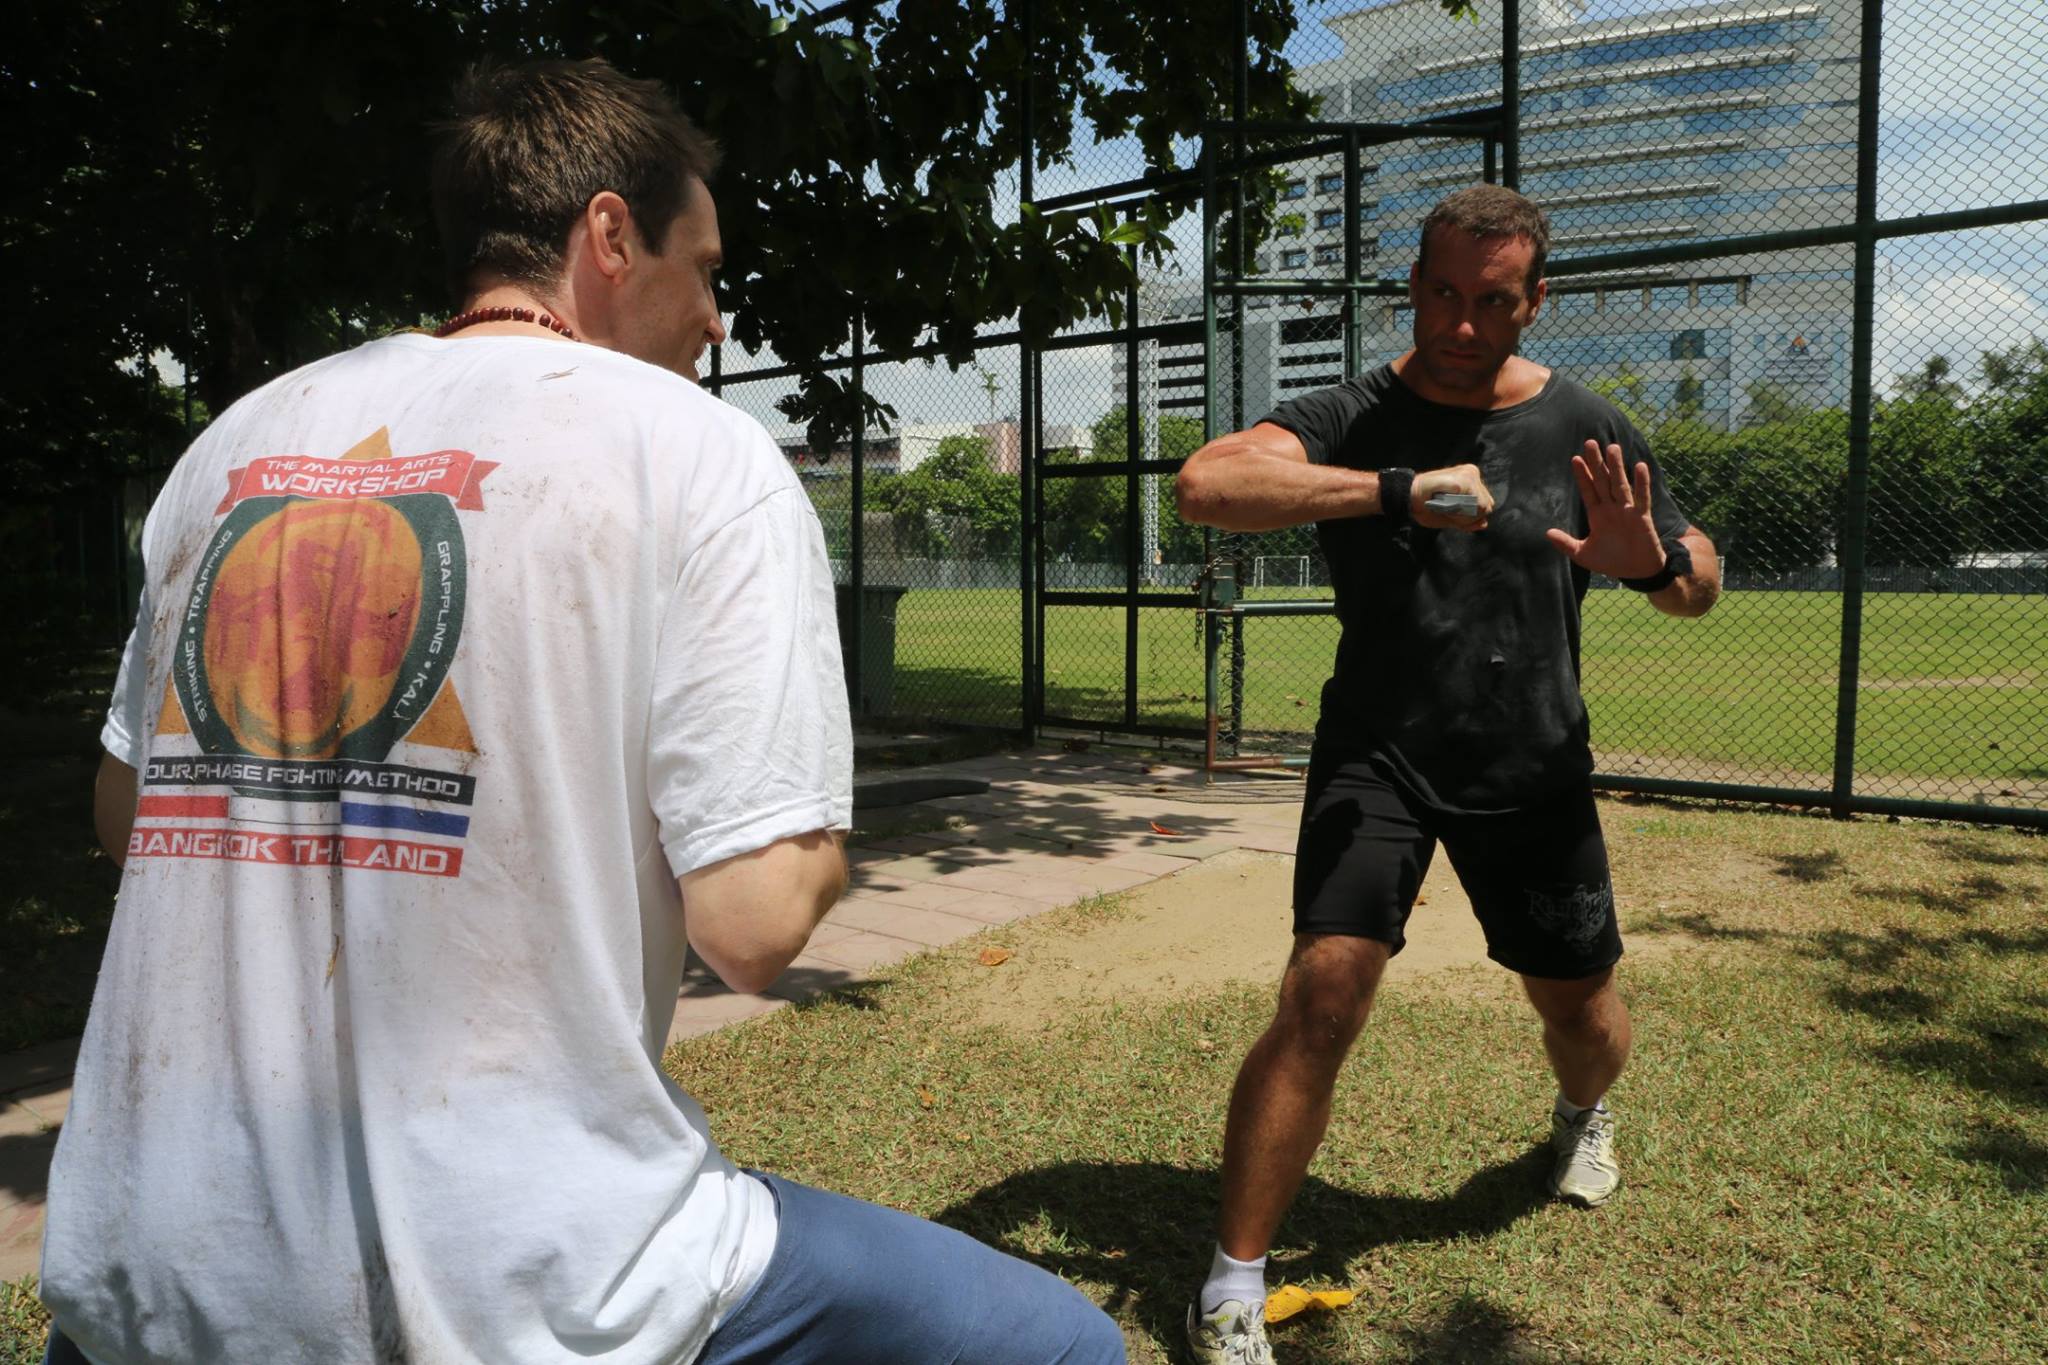 tony stokes Martial Arts workshop training